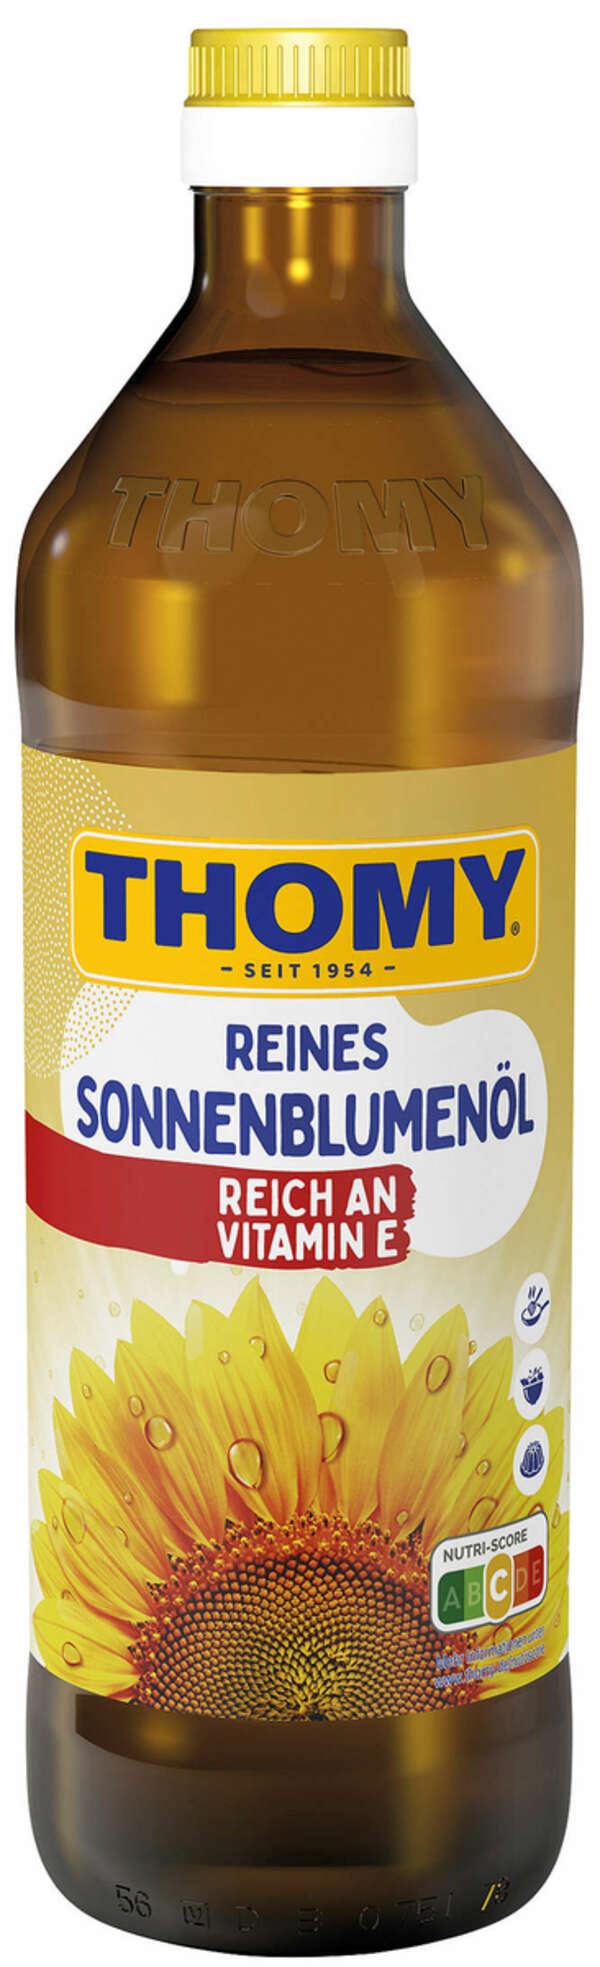 Bild 1 von THOMY Reines Sonnenblumenöl